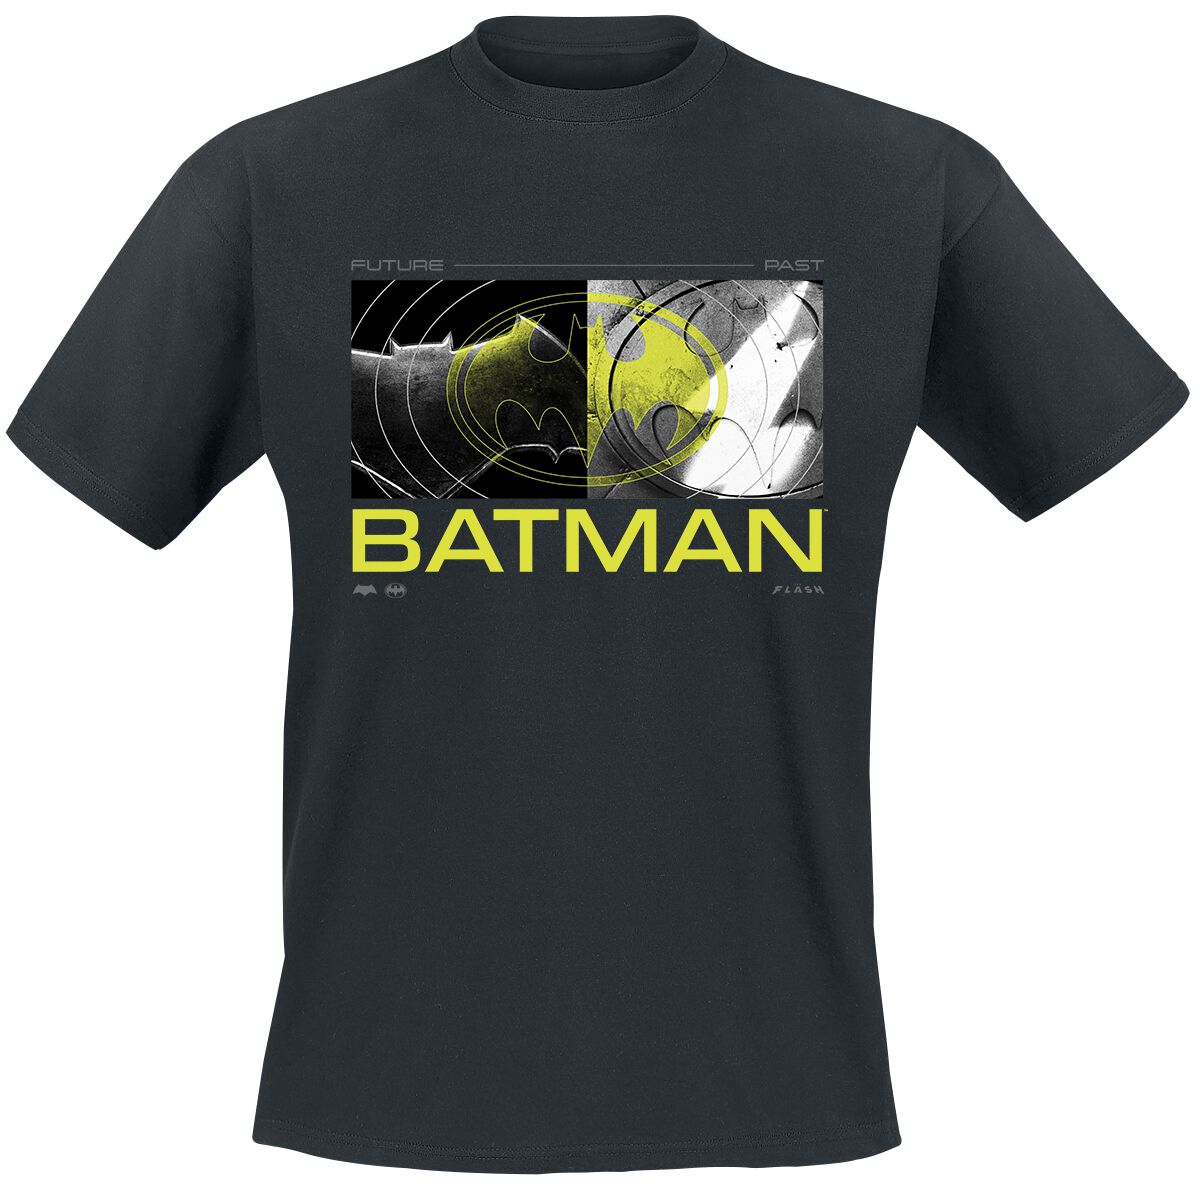 The Flash - DC Comics T-Shirt - Batman - Future To Past - S bis M - für Männer - Größe M - schwarz  - Lizenzierter Fanartikel von The Flash